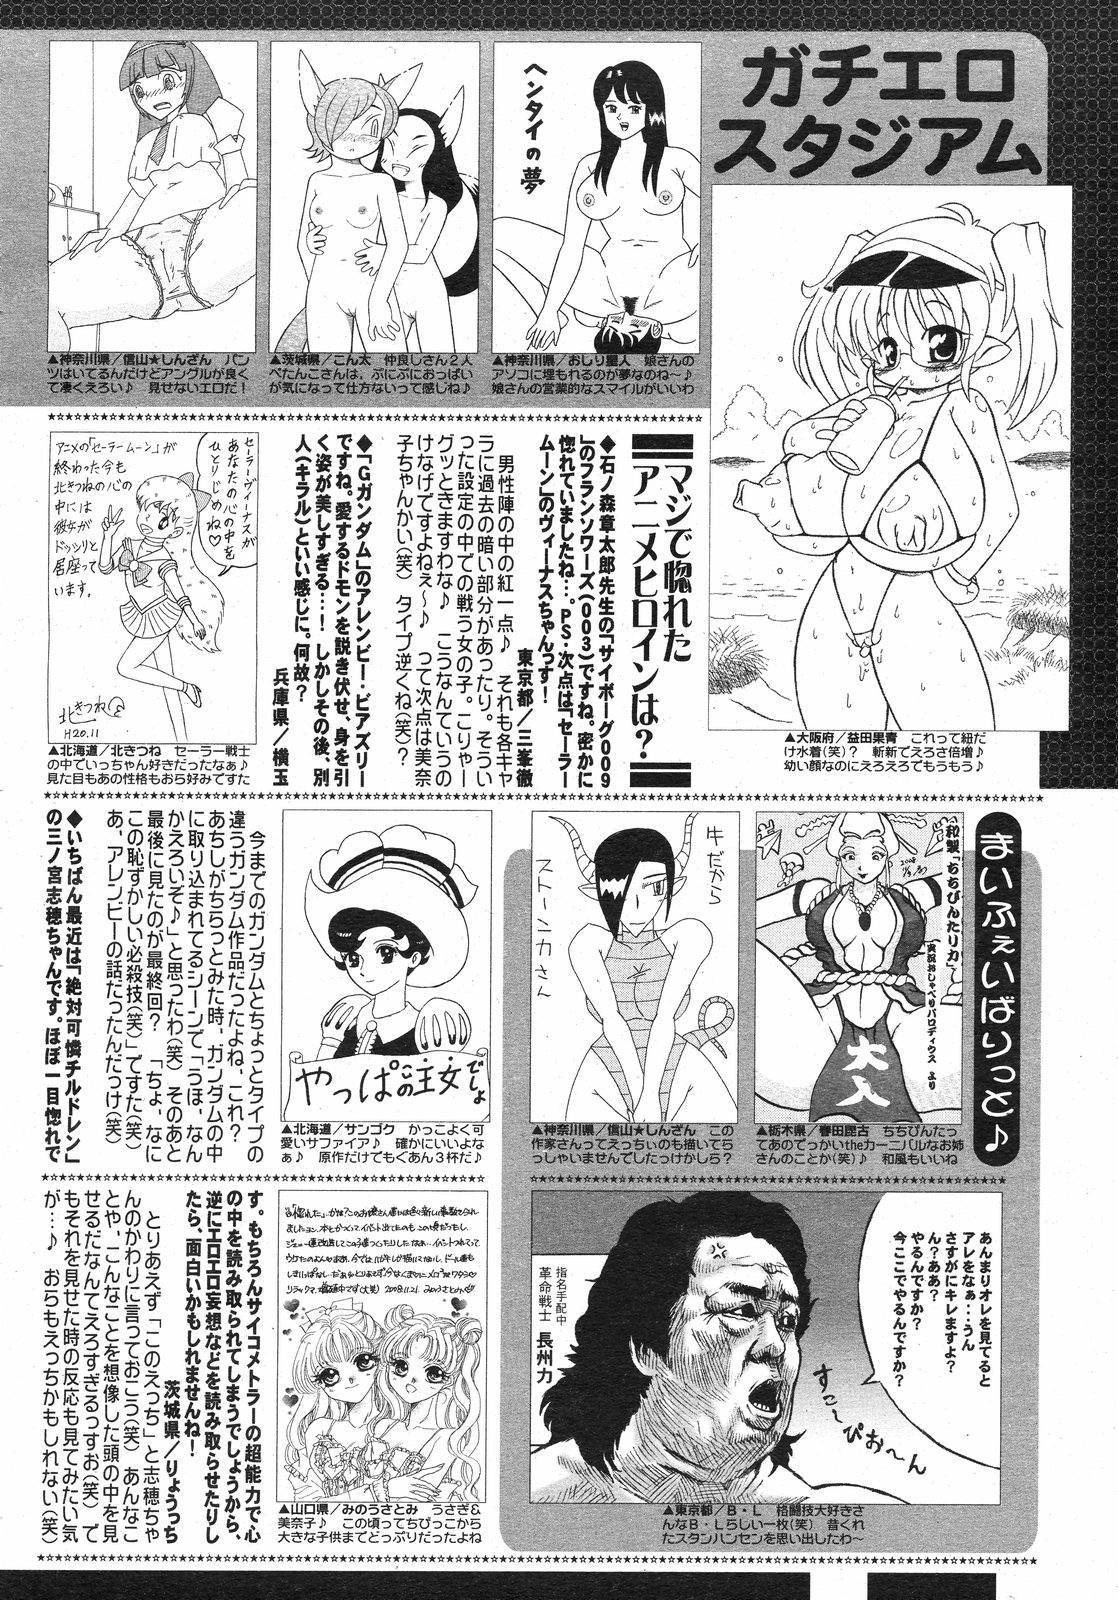 コミックゼロエクス Vol.13 2009年1月号